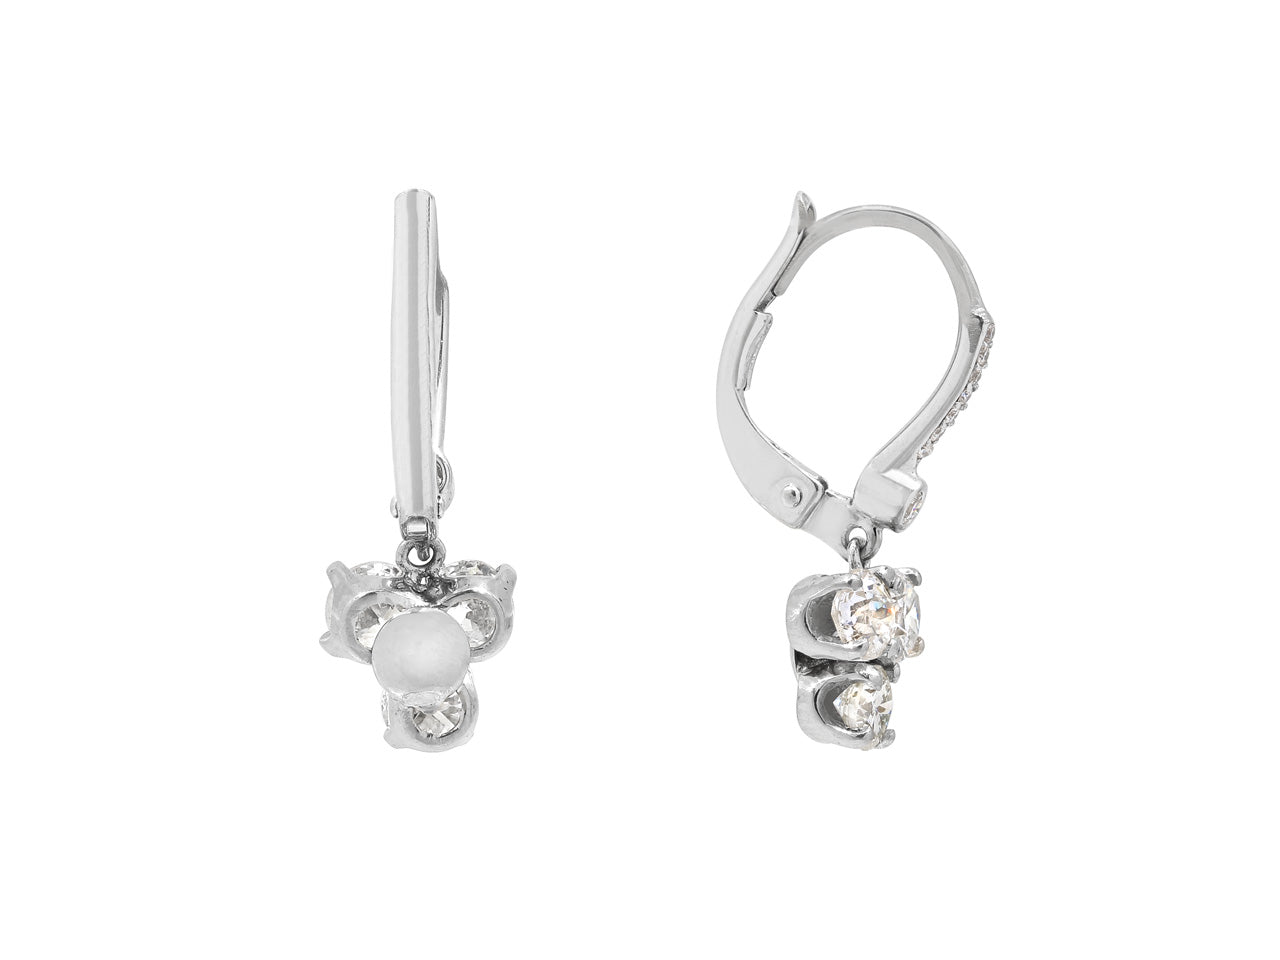 Beladora 'Bespoke' Diamond Drop Earrings in 18K White Gold